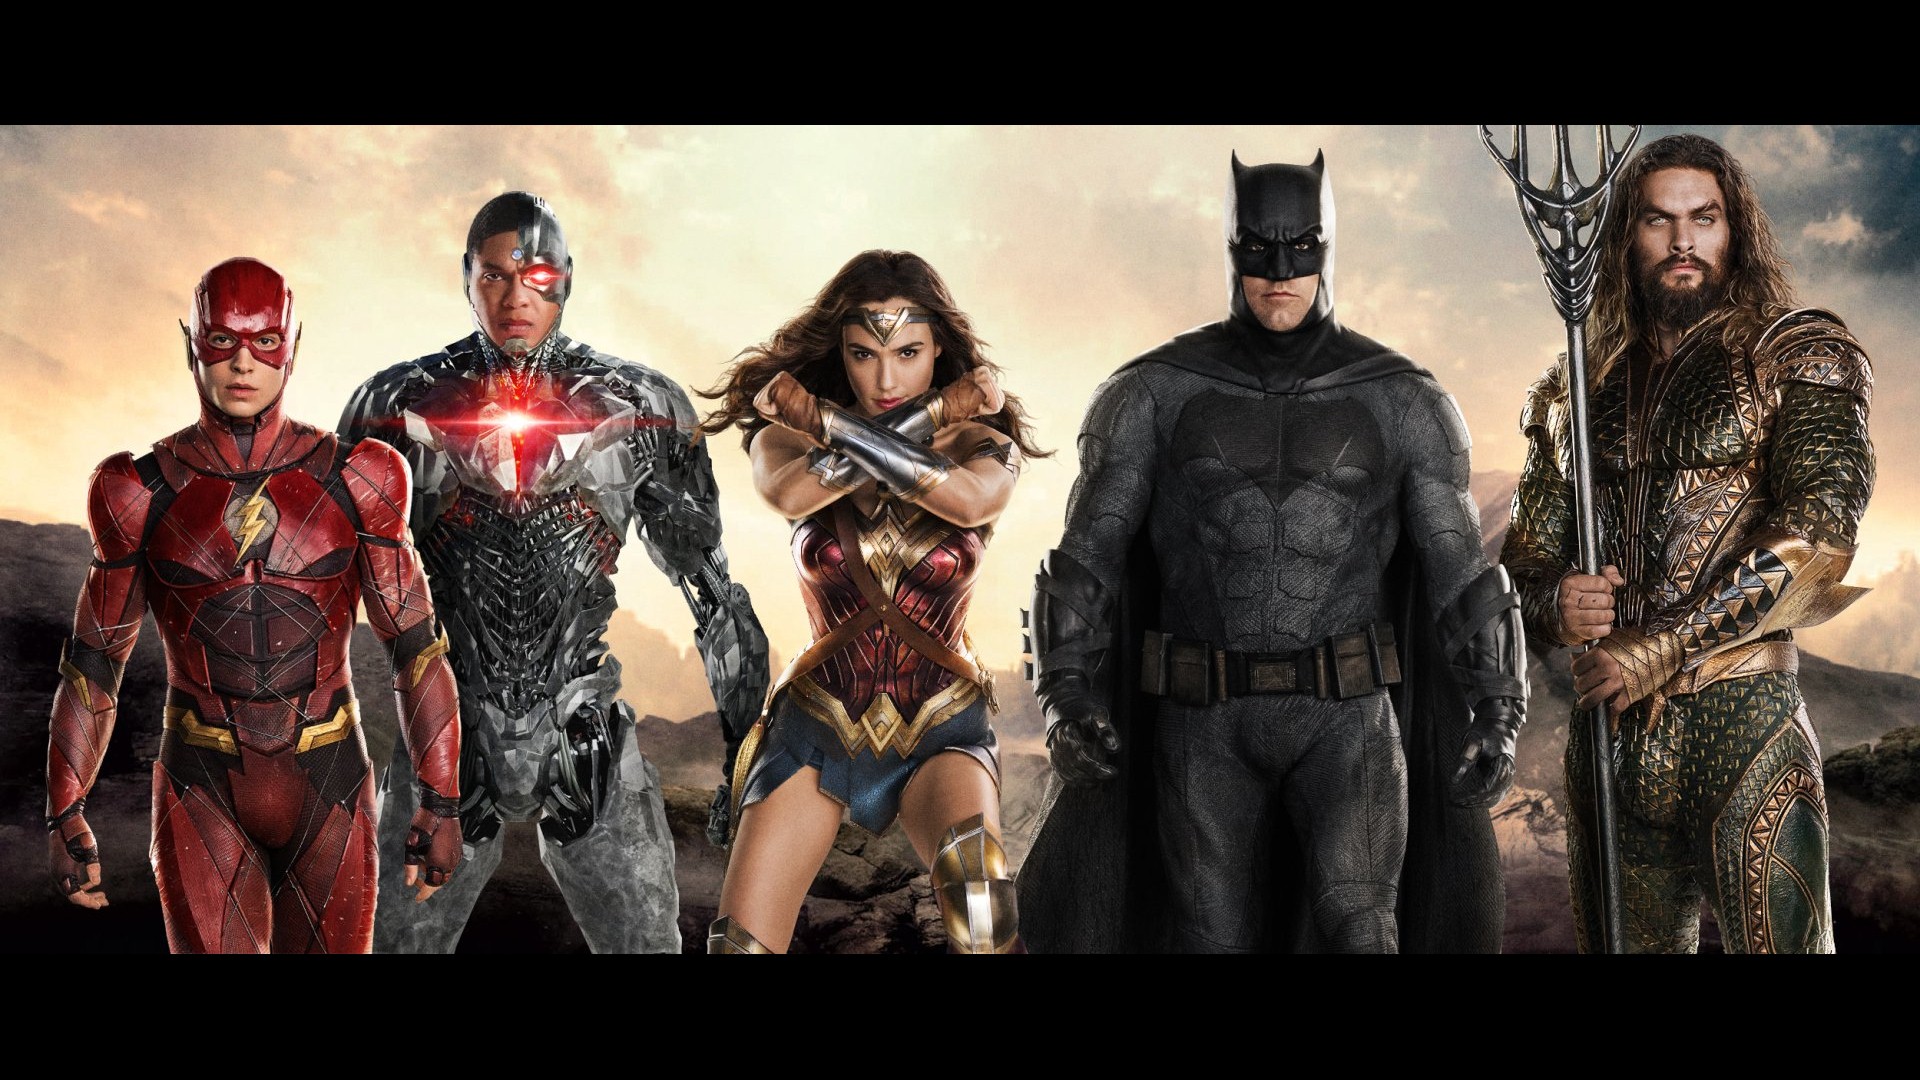 fond d'écran justice league,personnage fictif,super héros,film,héros,ligue de justice